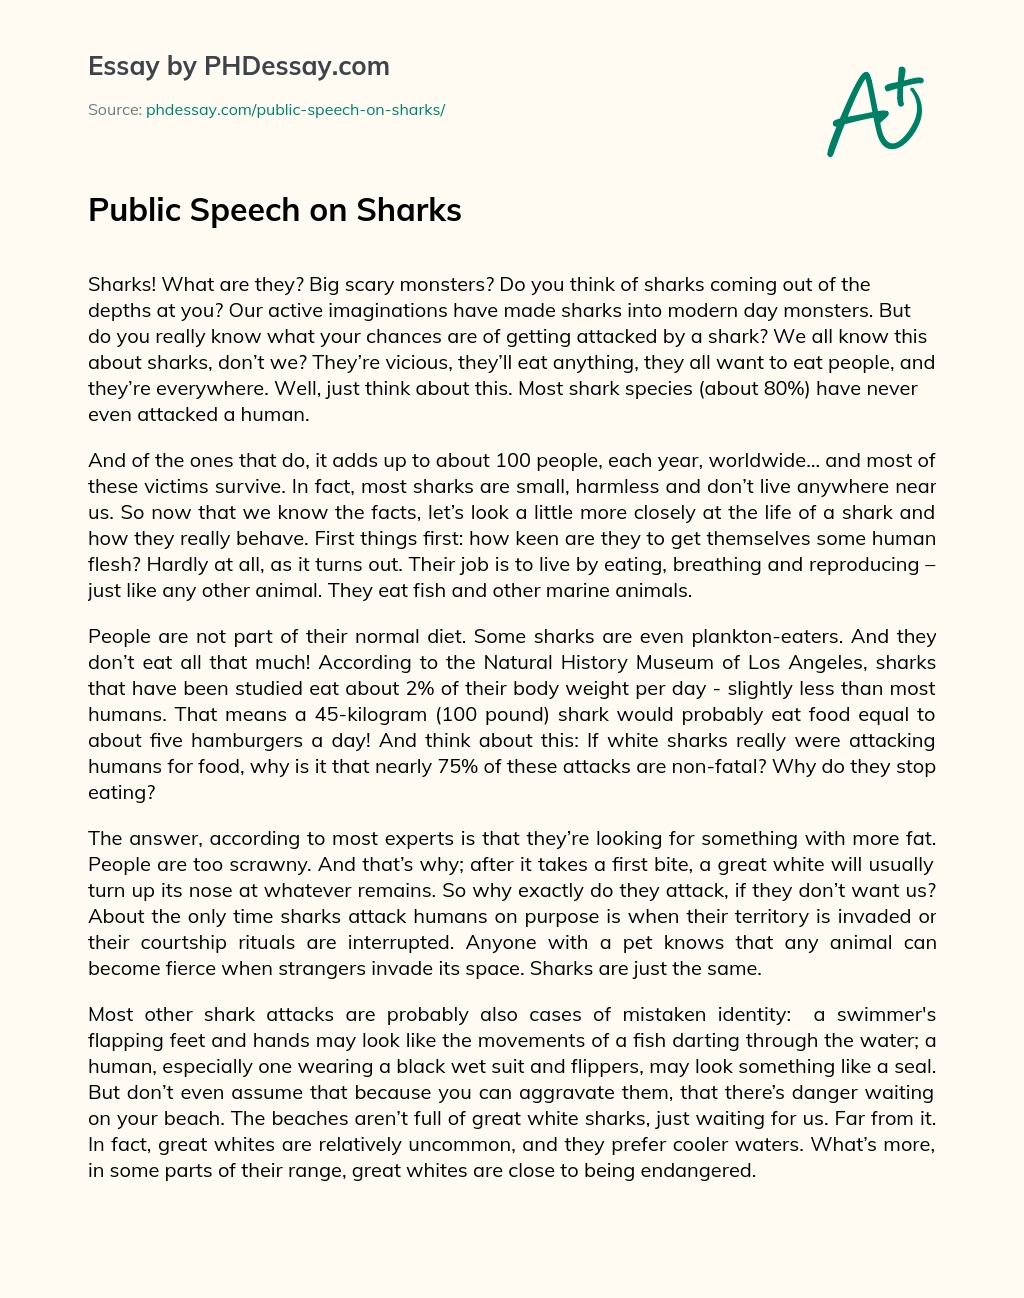 Public Speech on Sharks essay